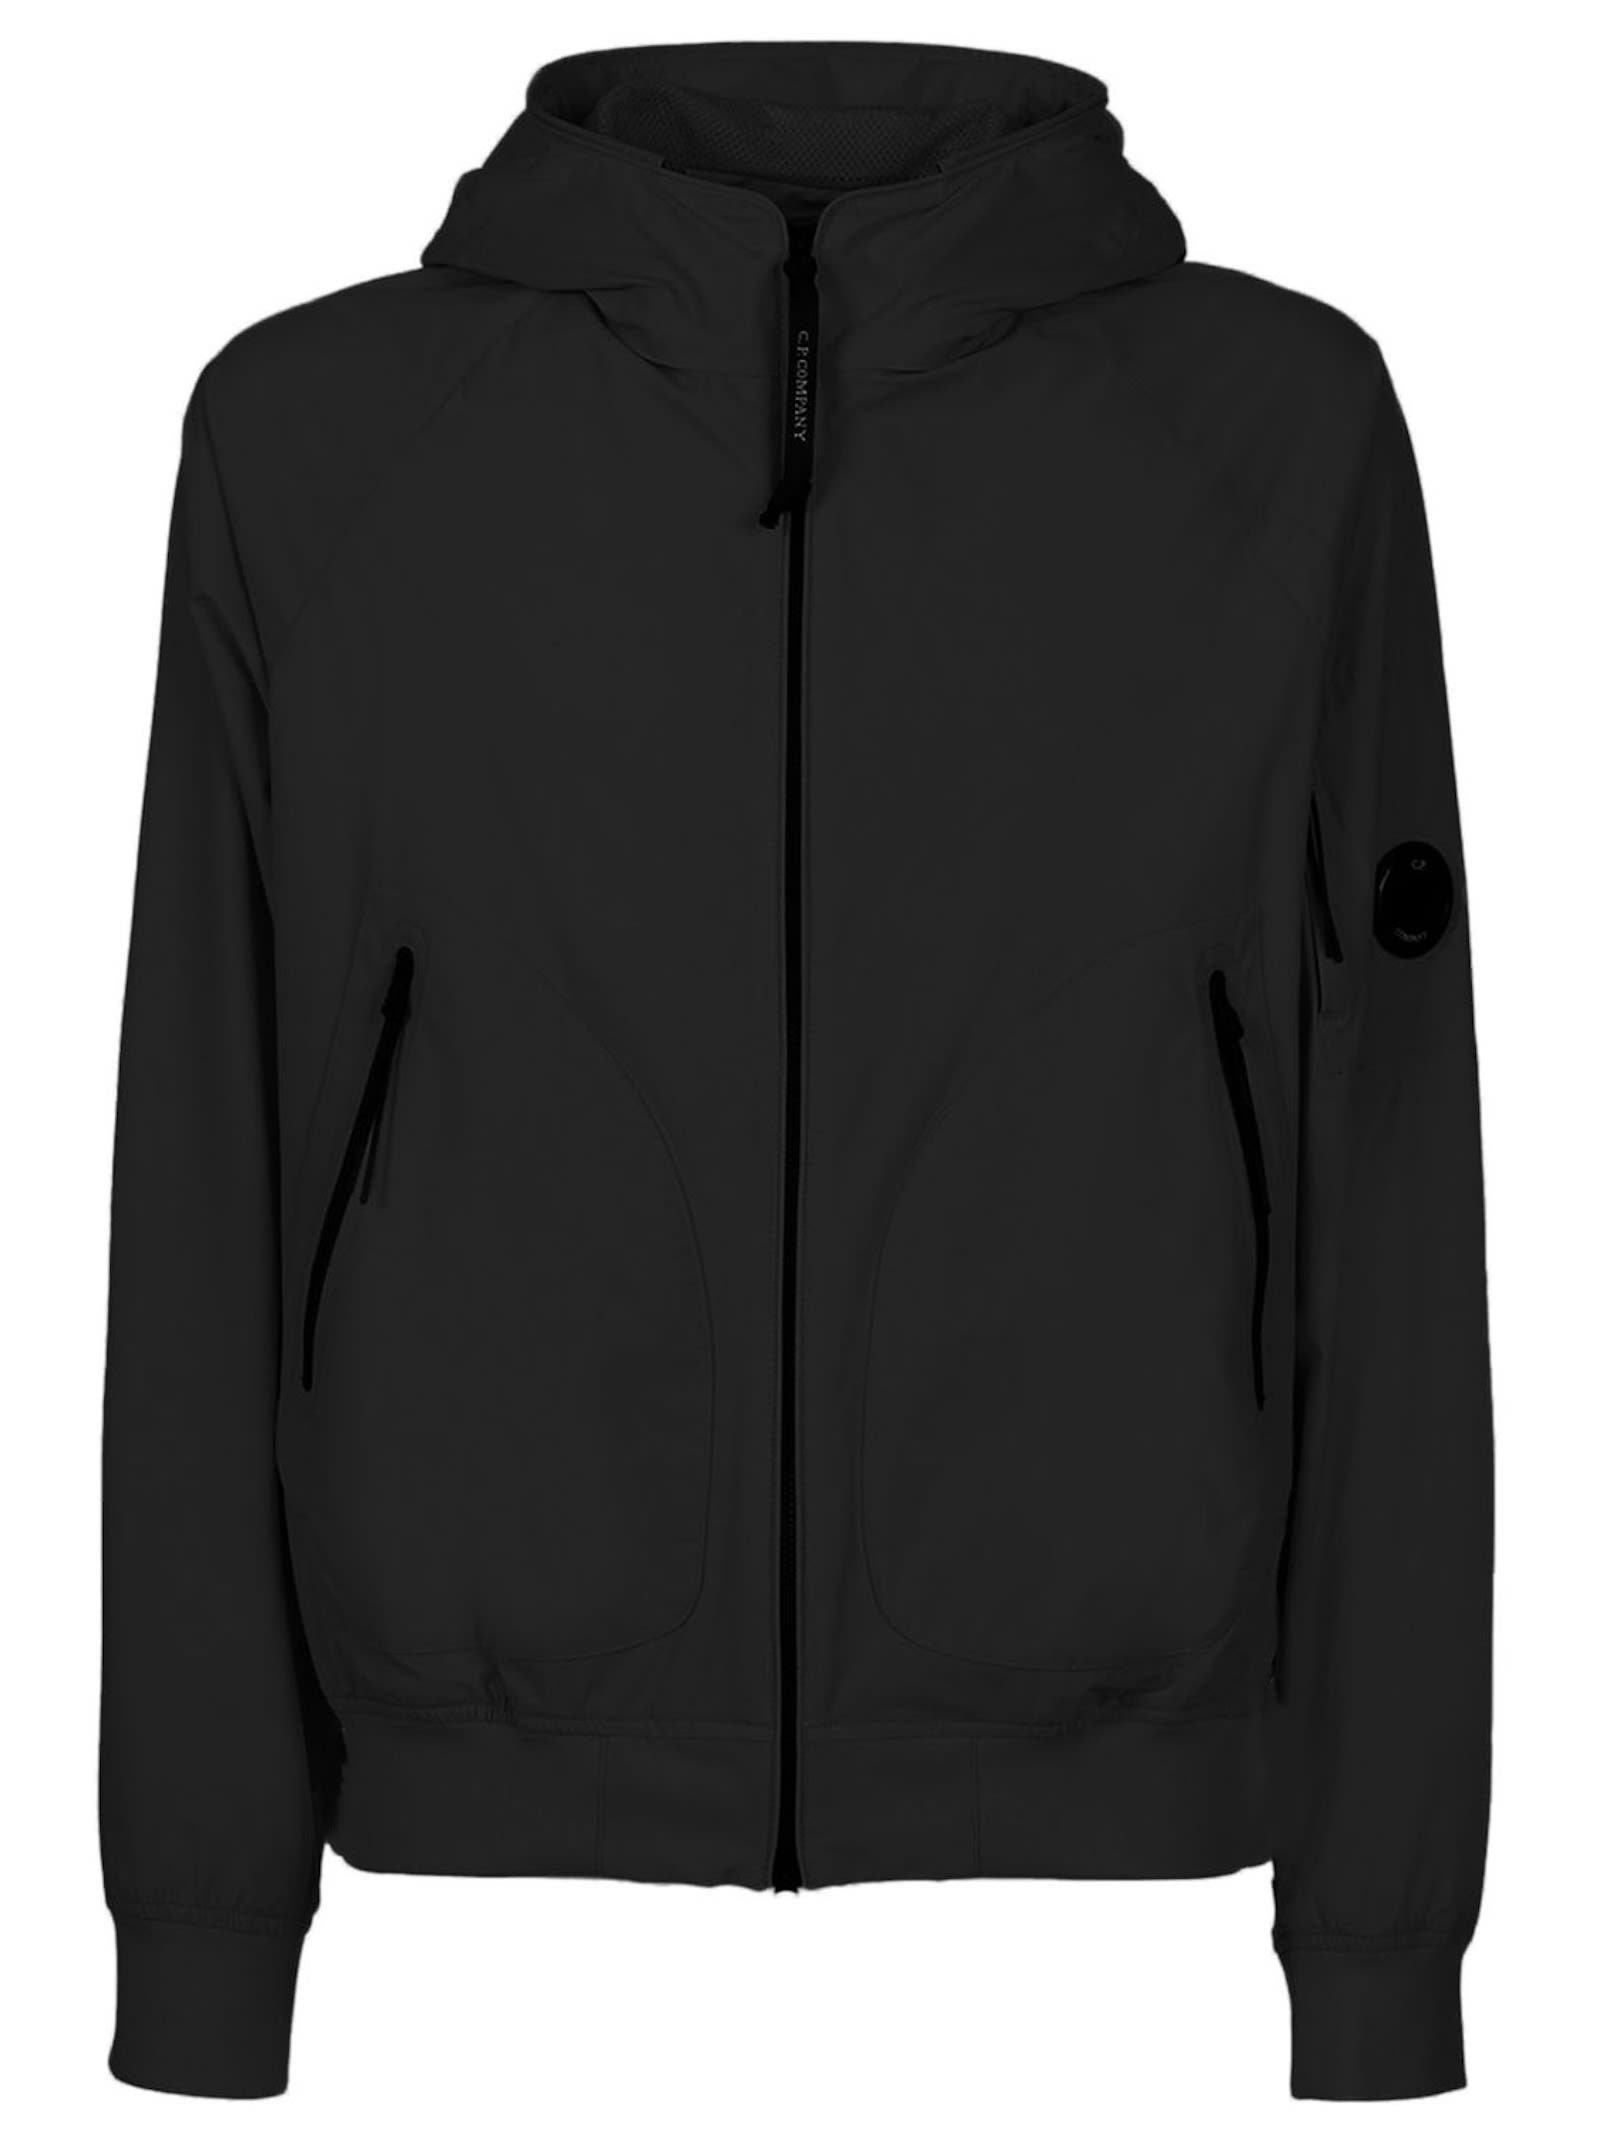 C.P. Company Black Pro-tek Mesh Jacket